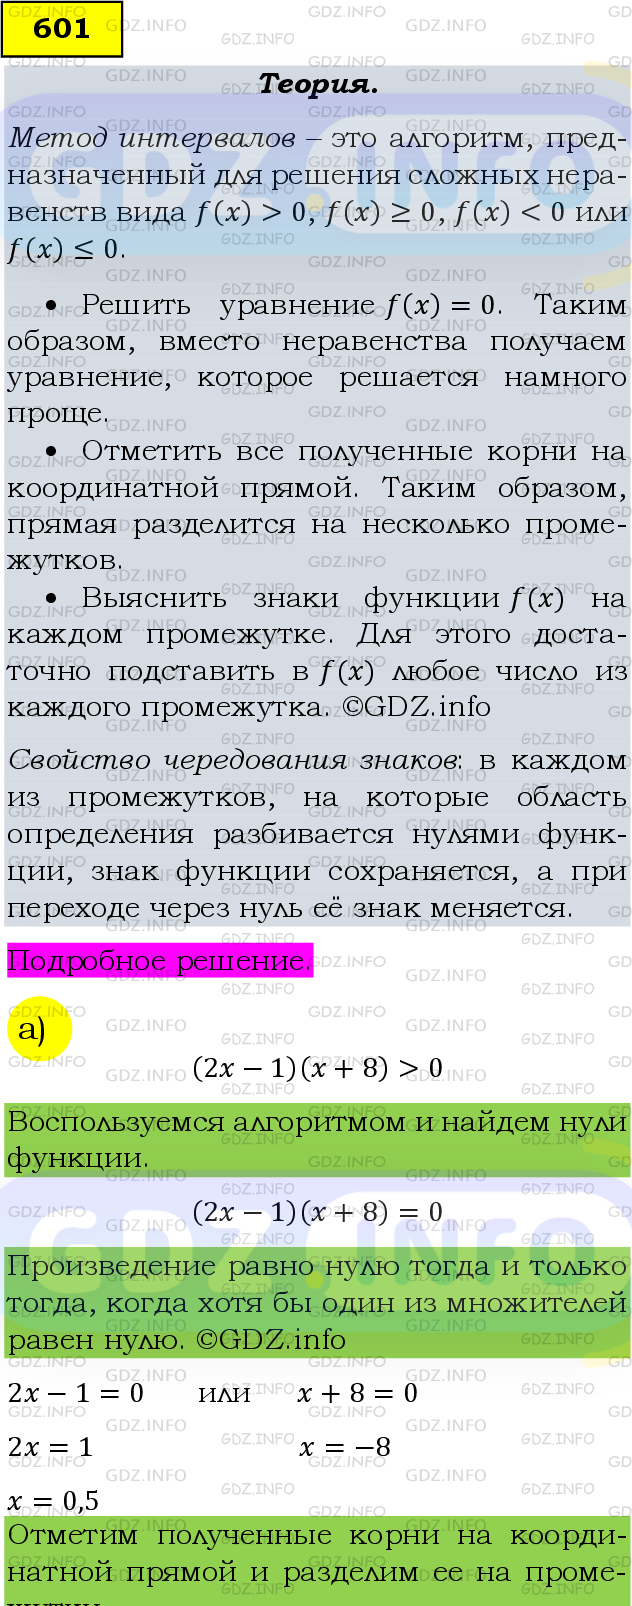 Фото подробного решения: Номер задания №601 из ГДЗ по Алгебре 9 класс: Макарычев Ю.Н.